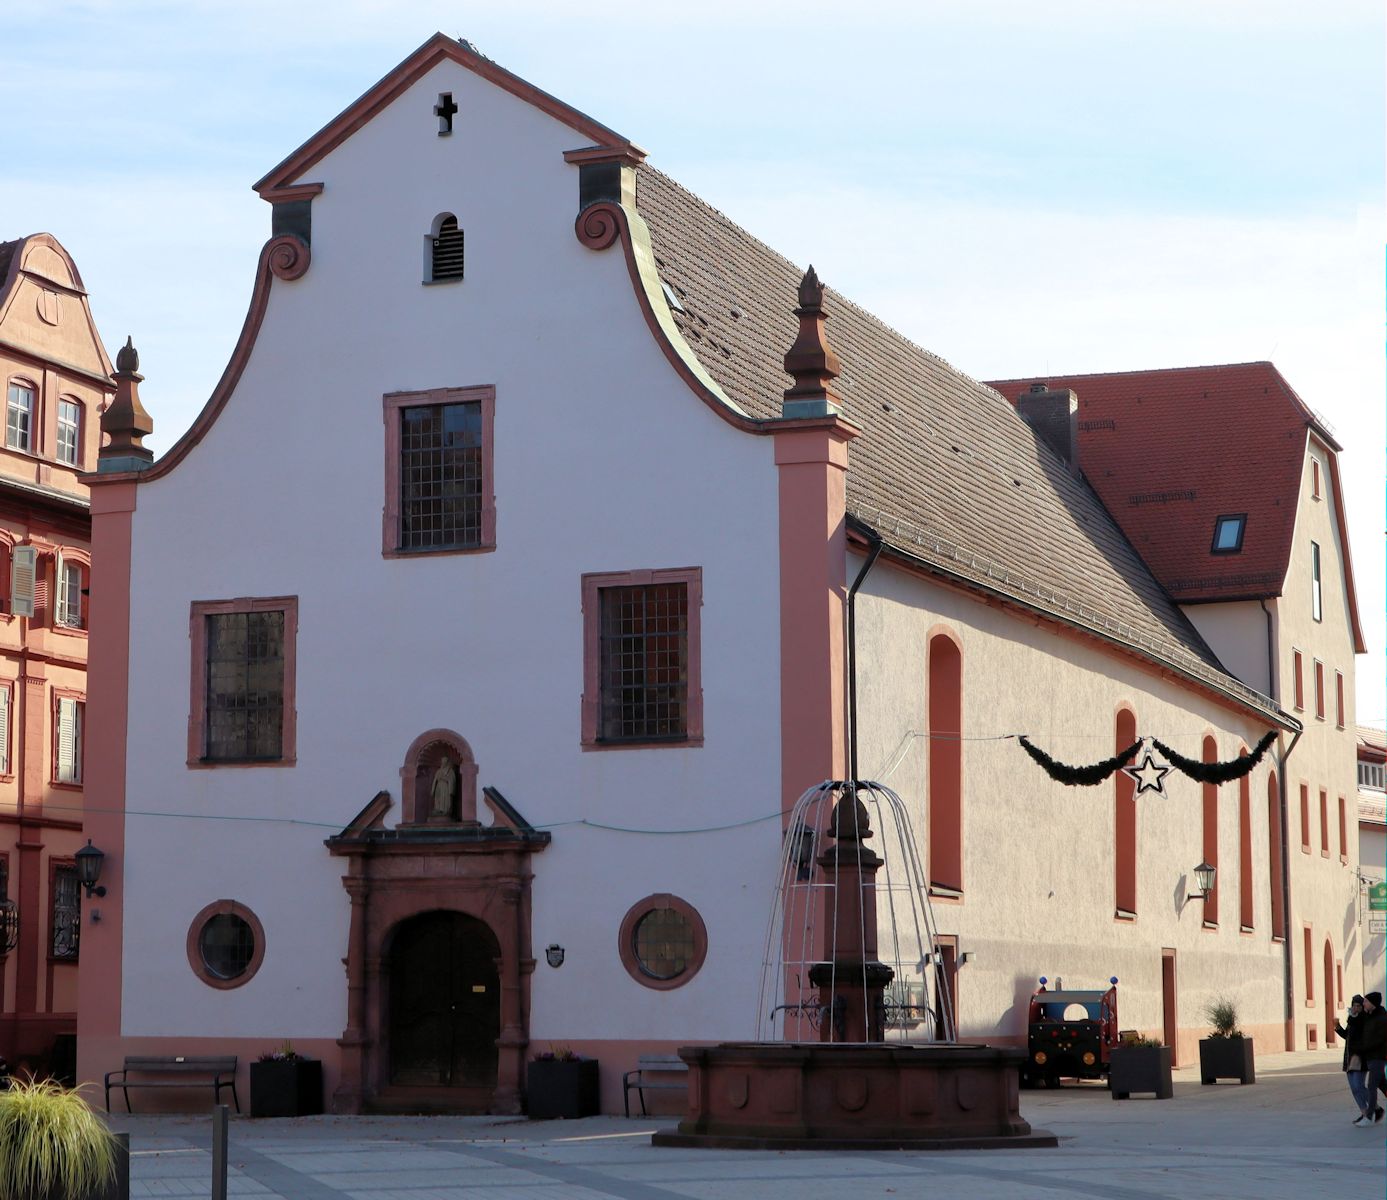 Kirche St. Lioba in Tauberbischofsheim an der Stelle des ehemaligen Klosters